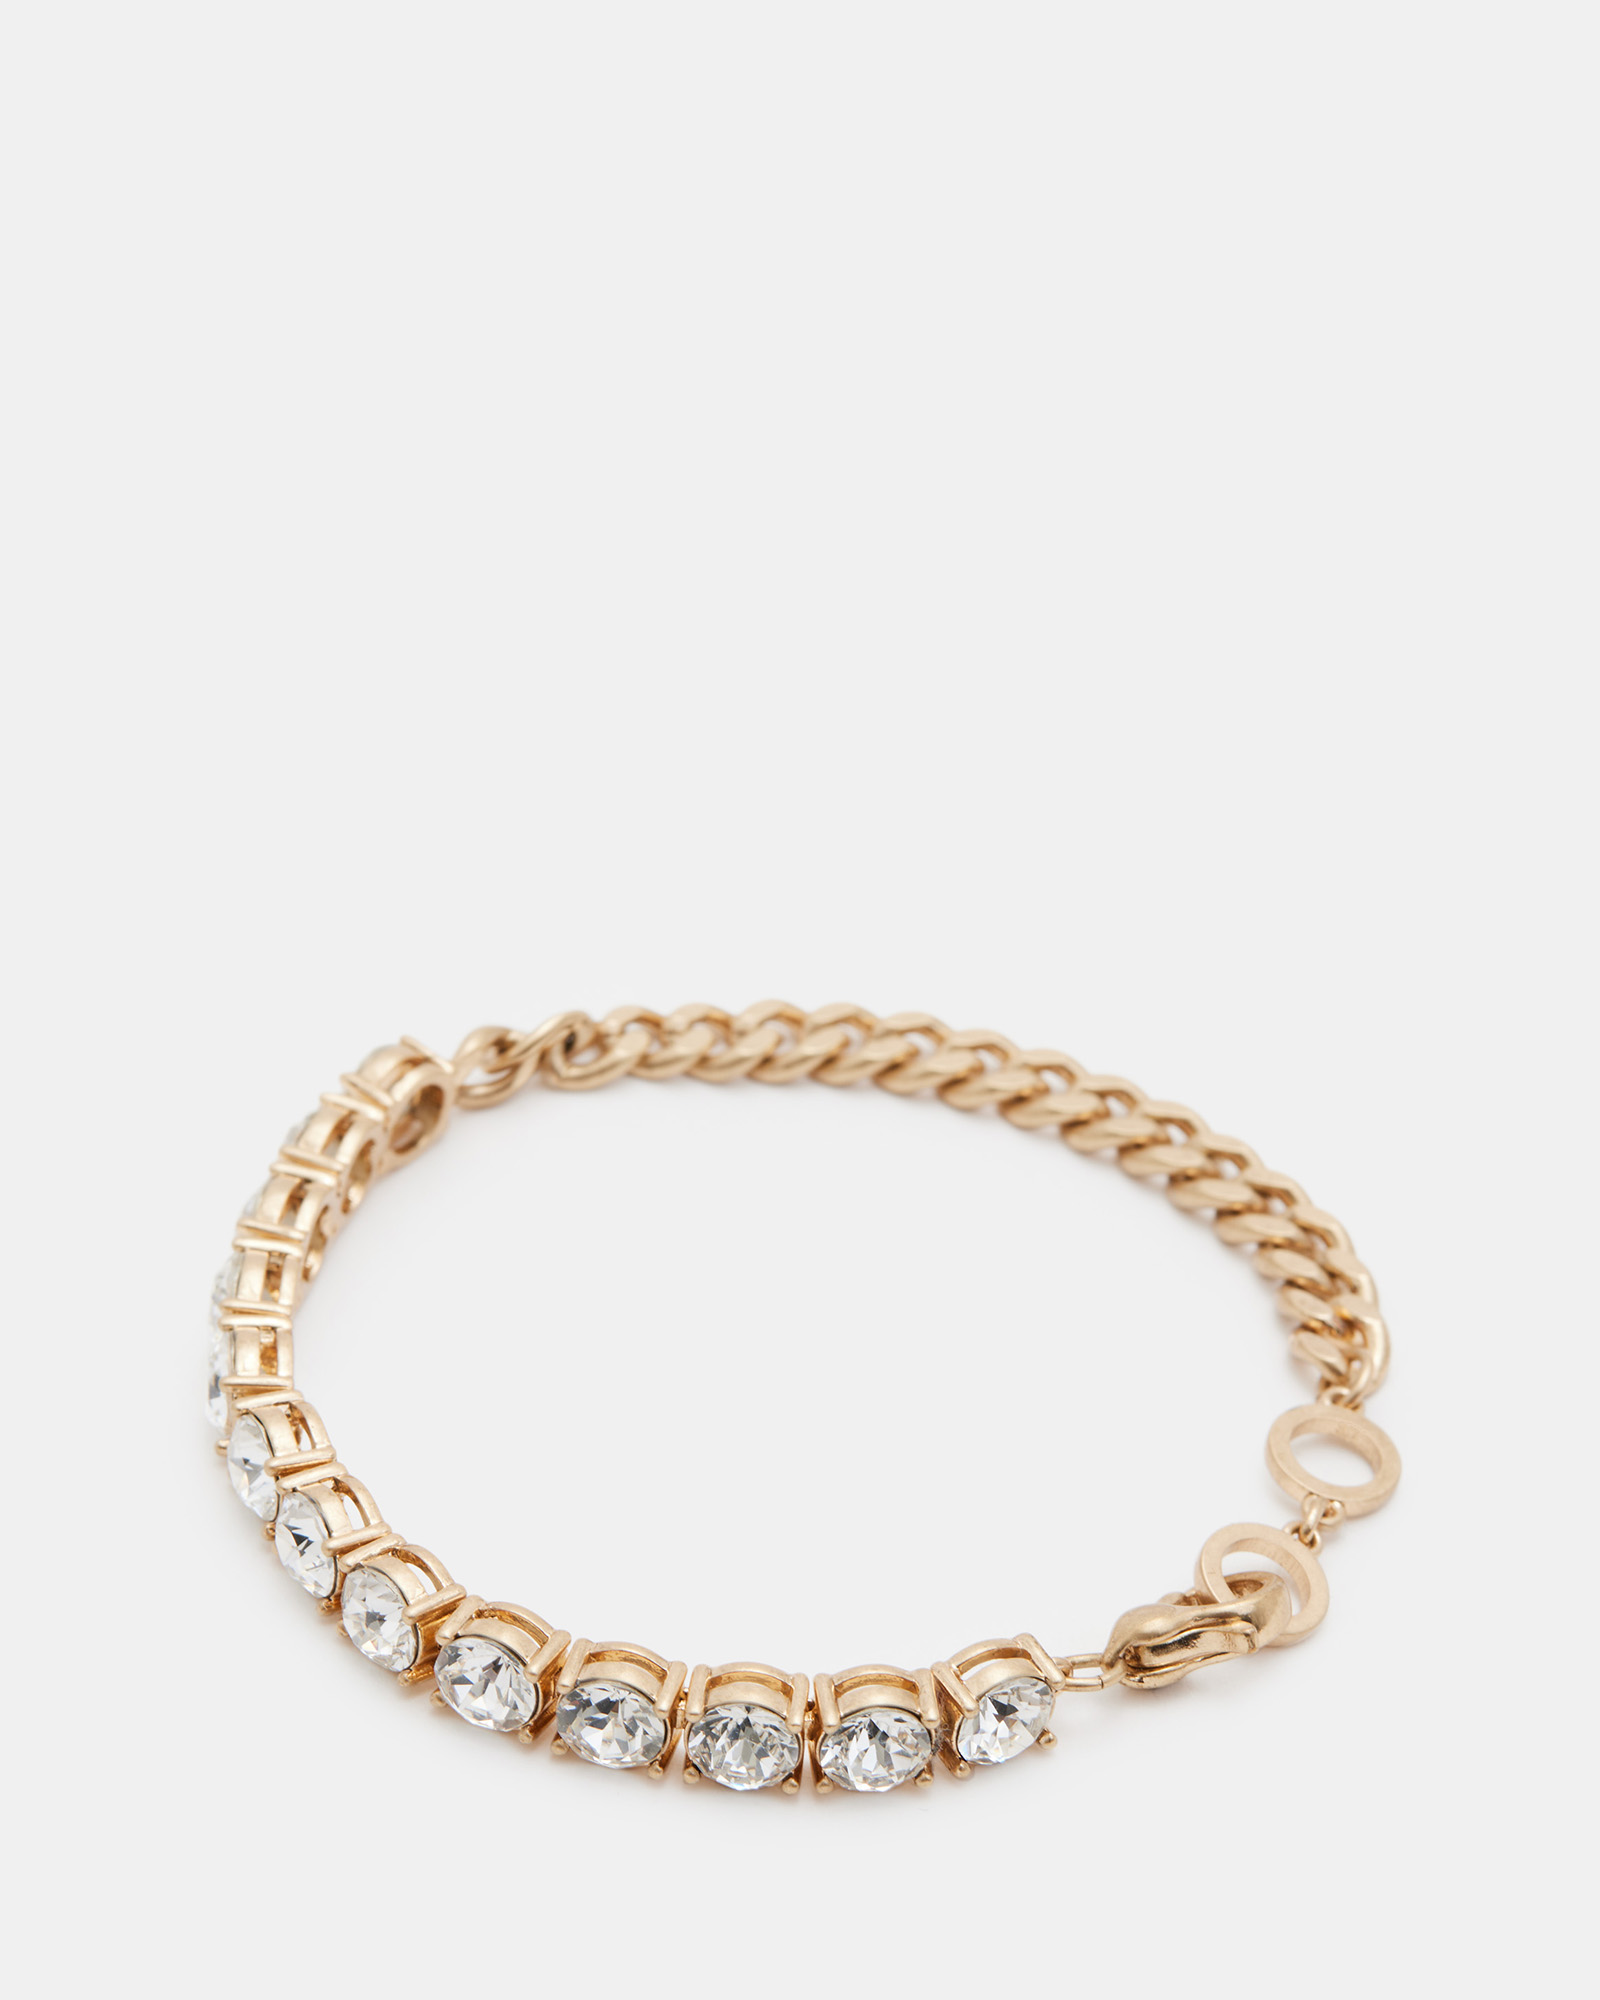 AllSaints Delmy Crystal Curb Chain Bracelet,, WARM BRASS/CRYSTAL